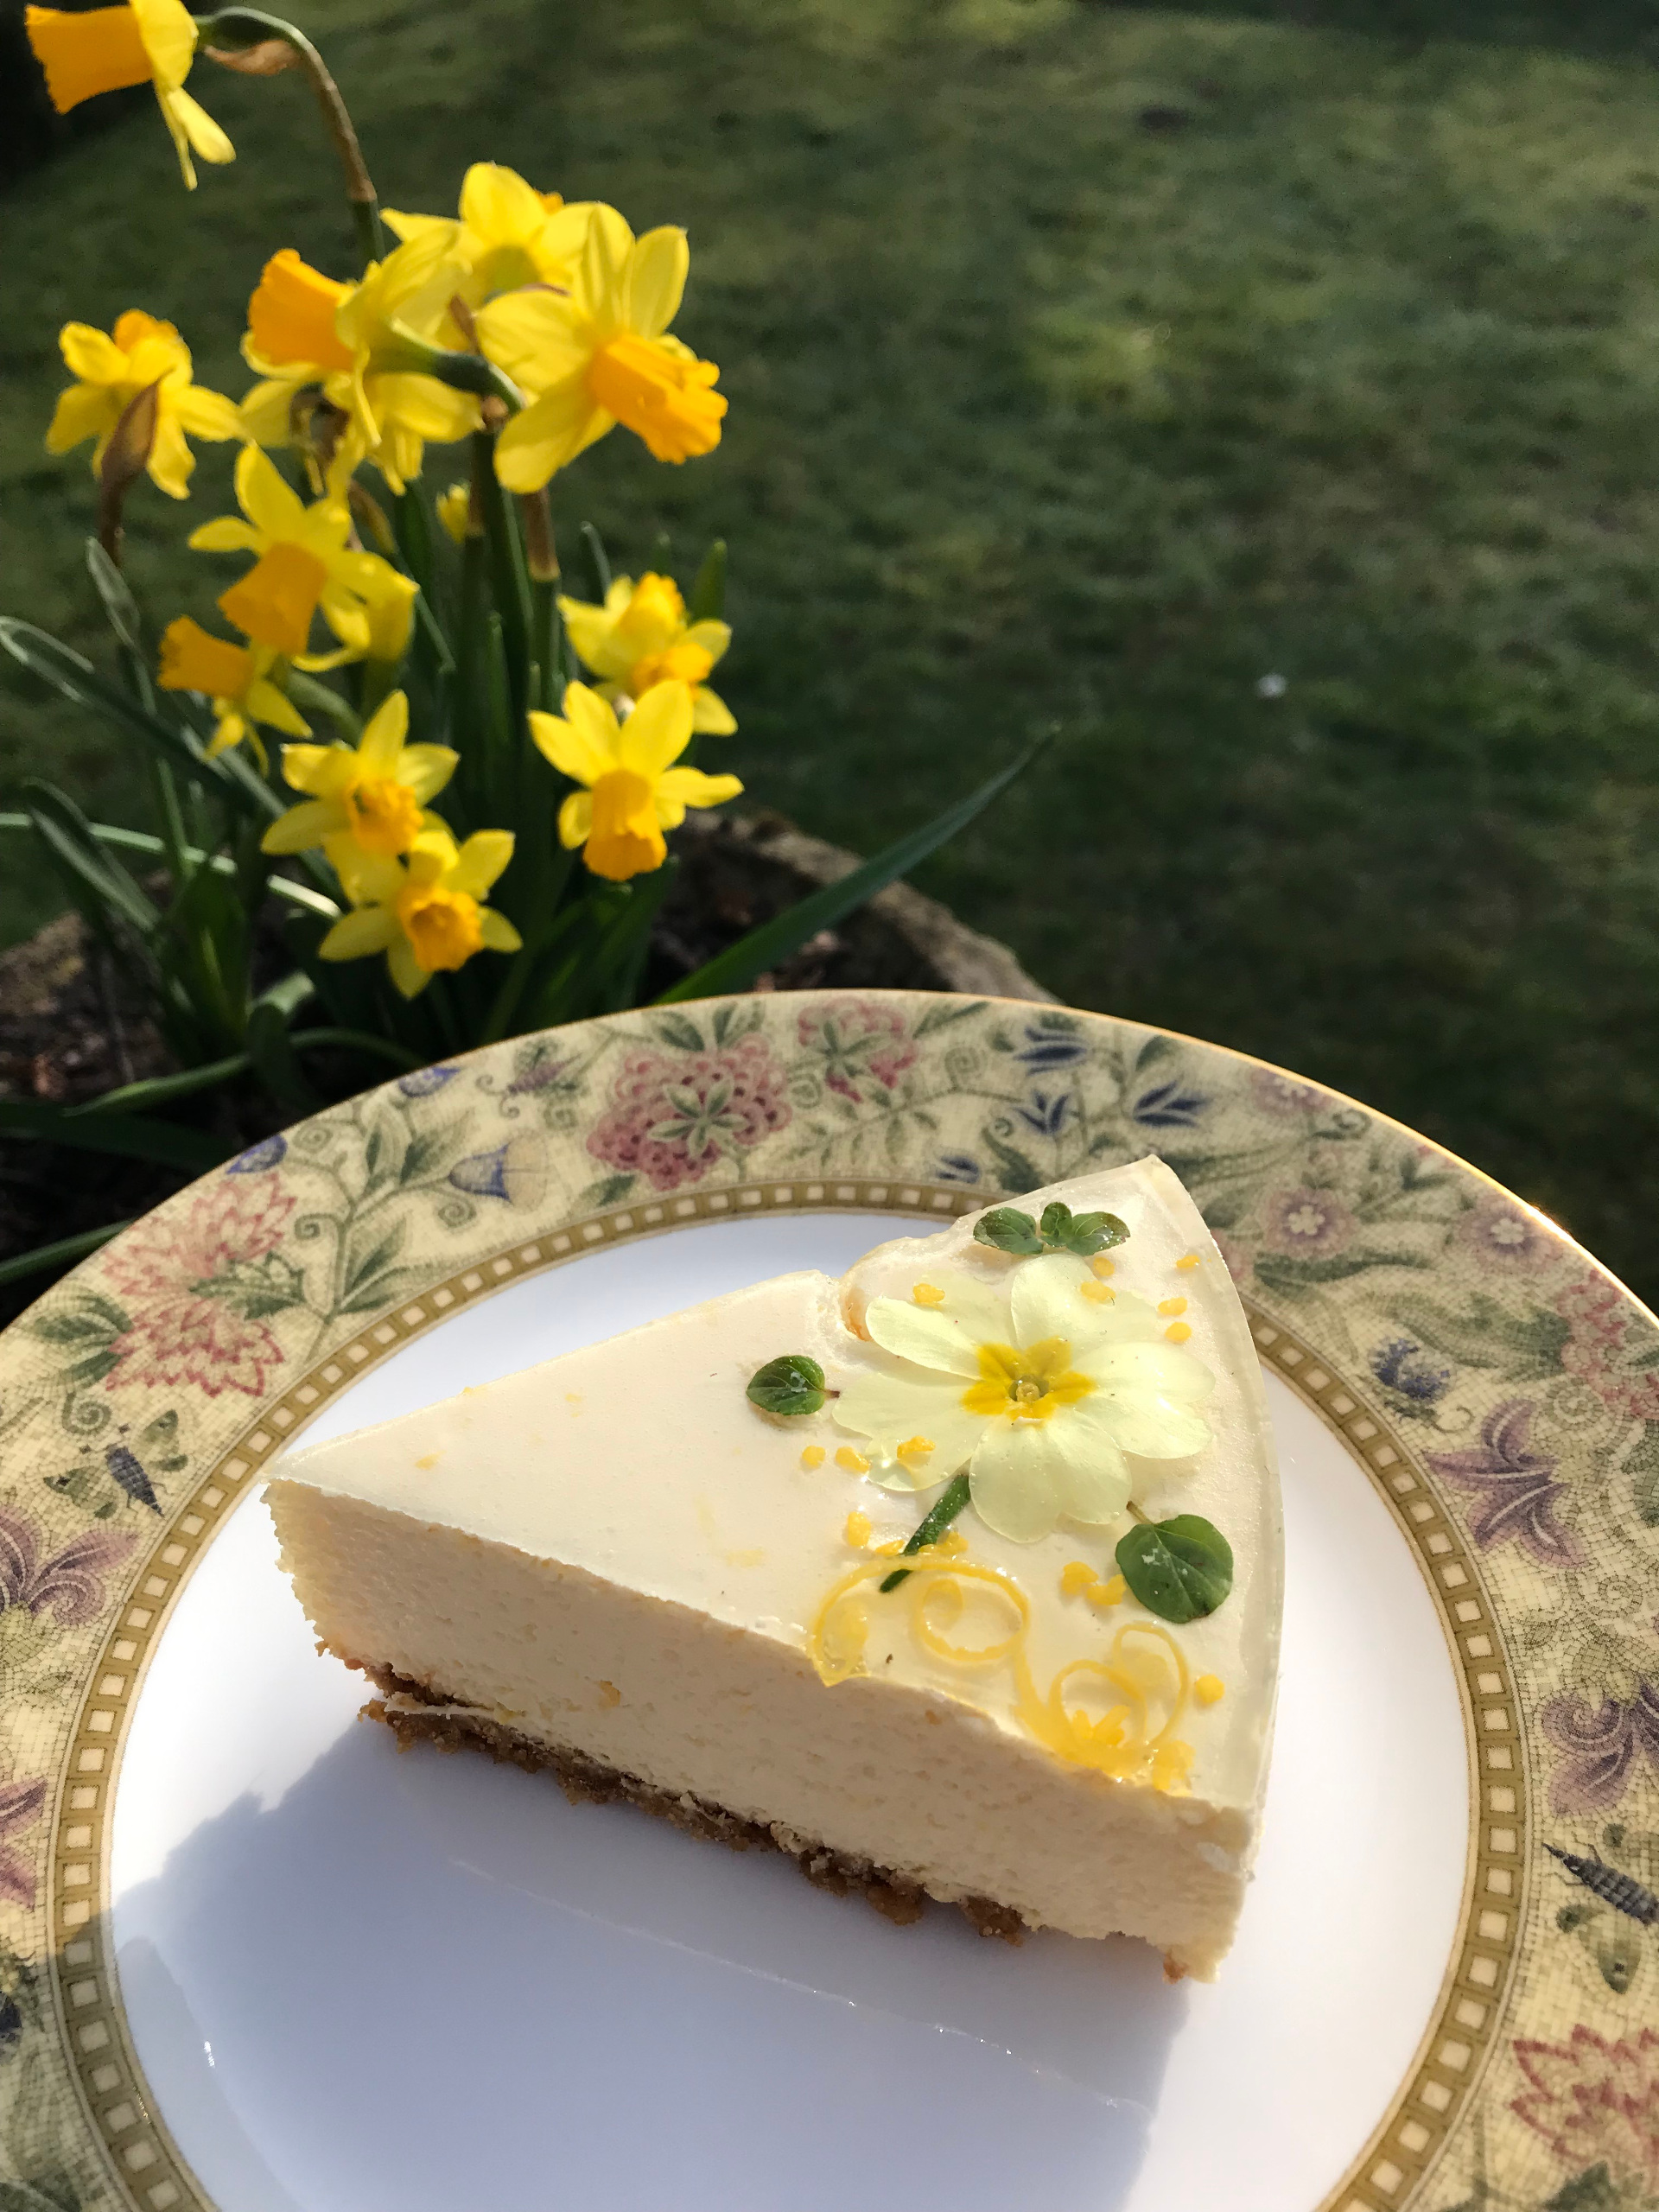 Lemon and Elderflower Dessert